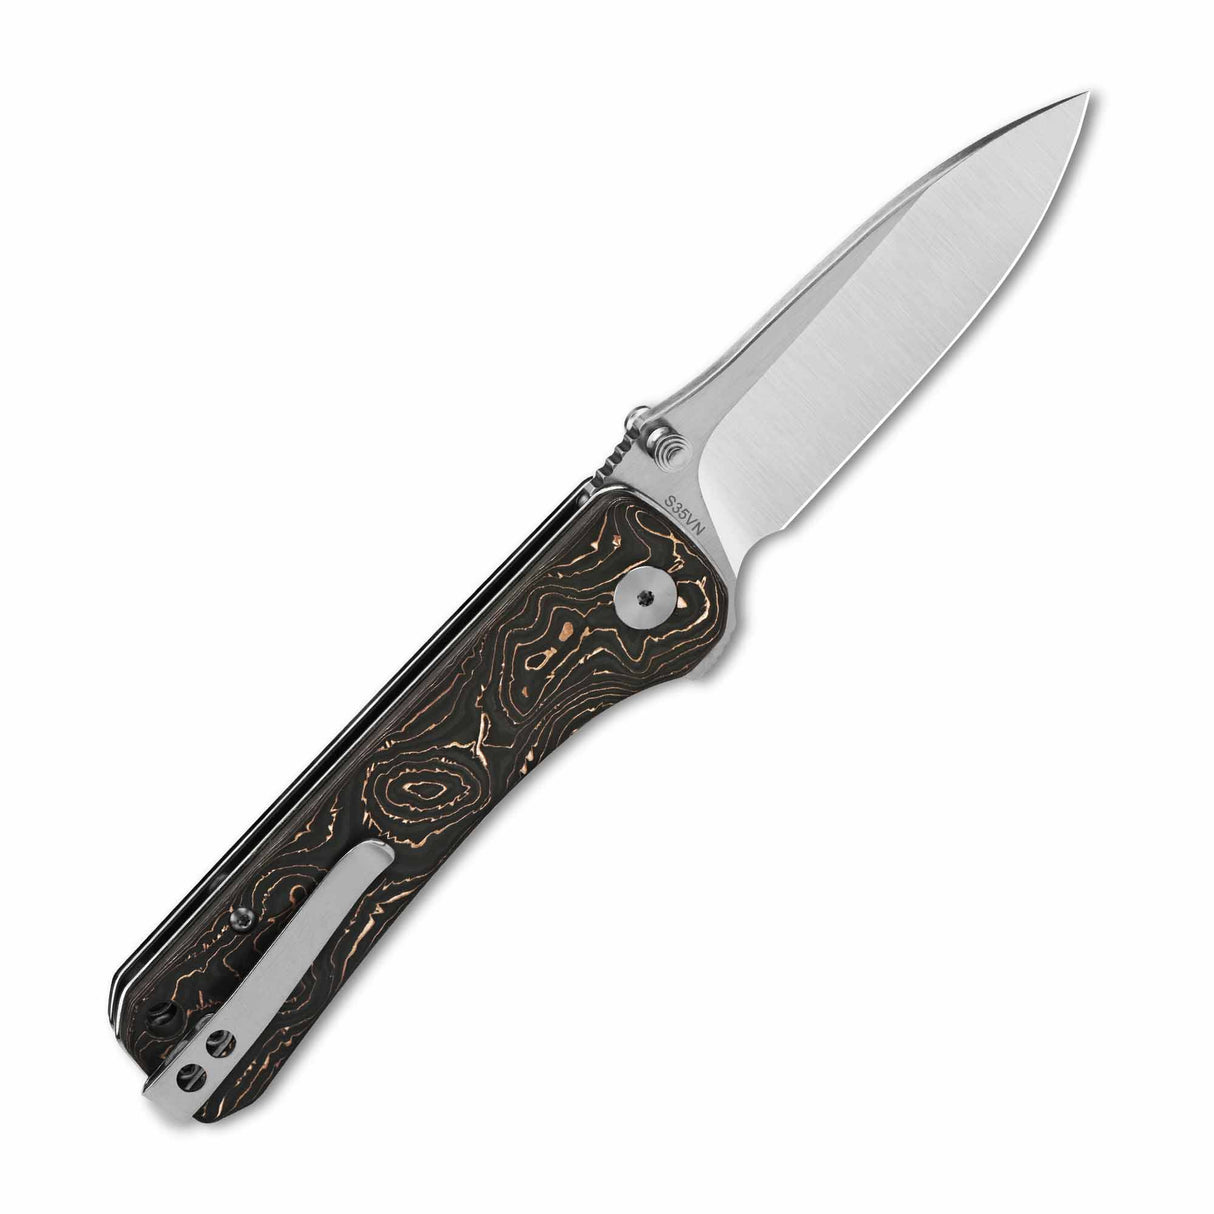 QSP Hawk Liner Lock Pocket Knife Laminated Damascus/S35VN Blade with Copper foil Carbon Fiber Handles